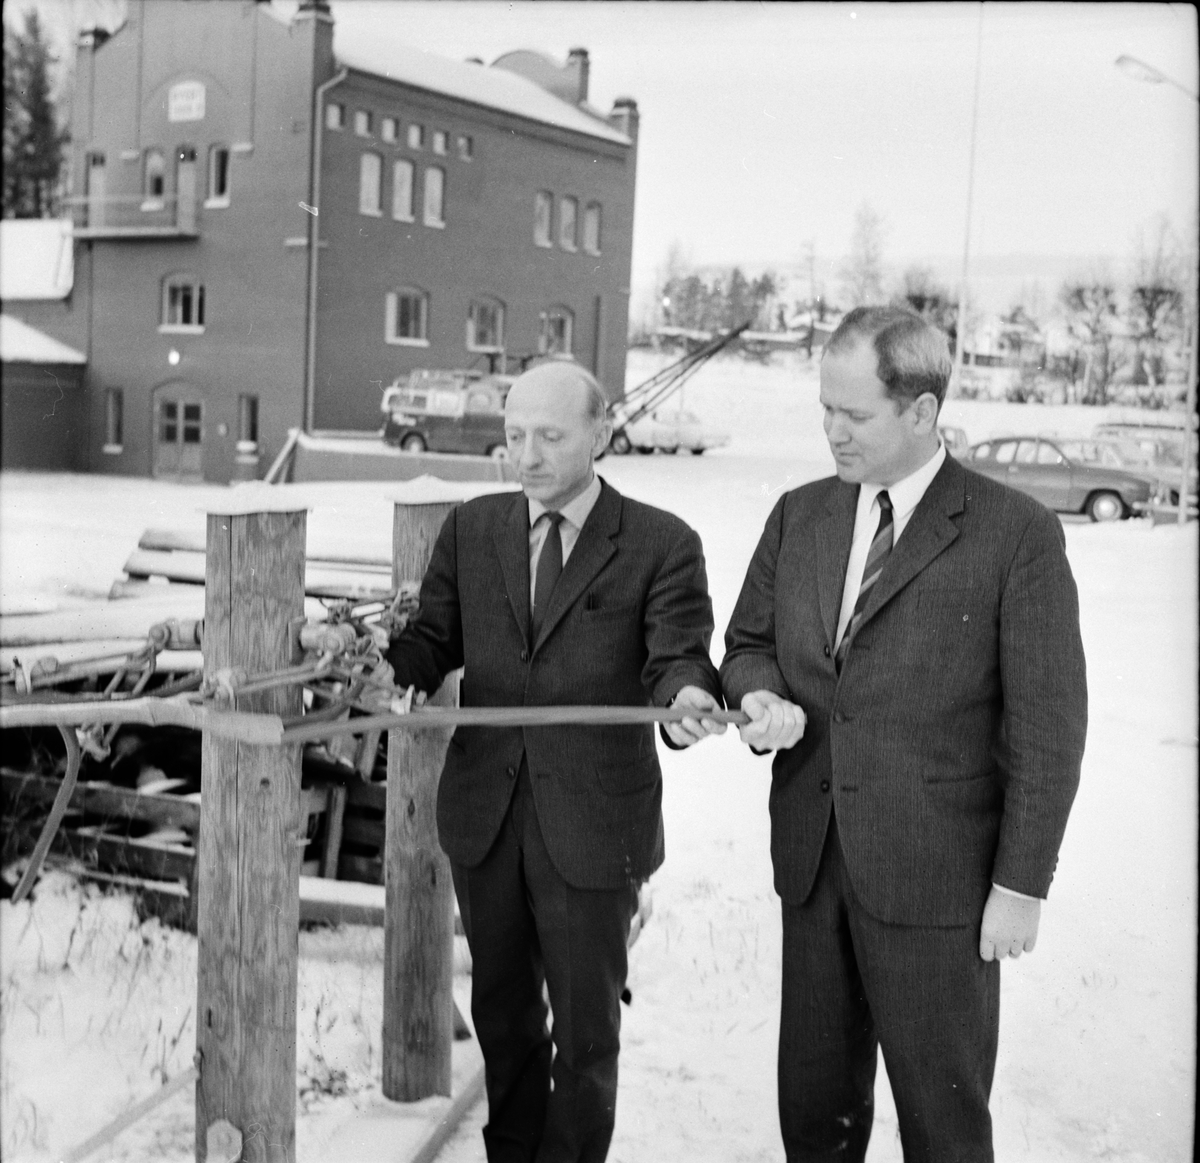 Arbrå,
Kraftverkets visning,
9 December 1967